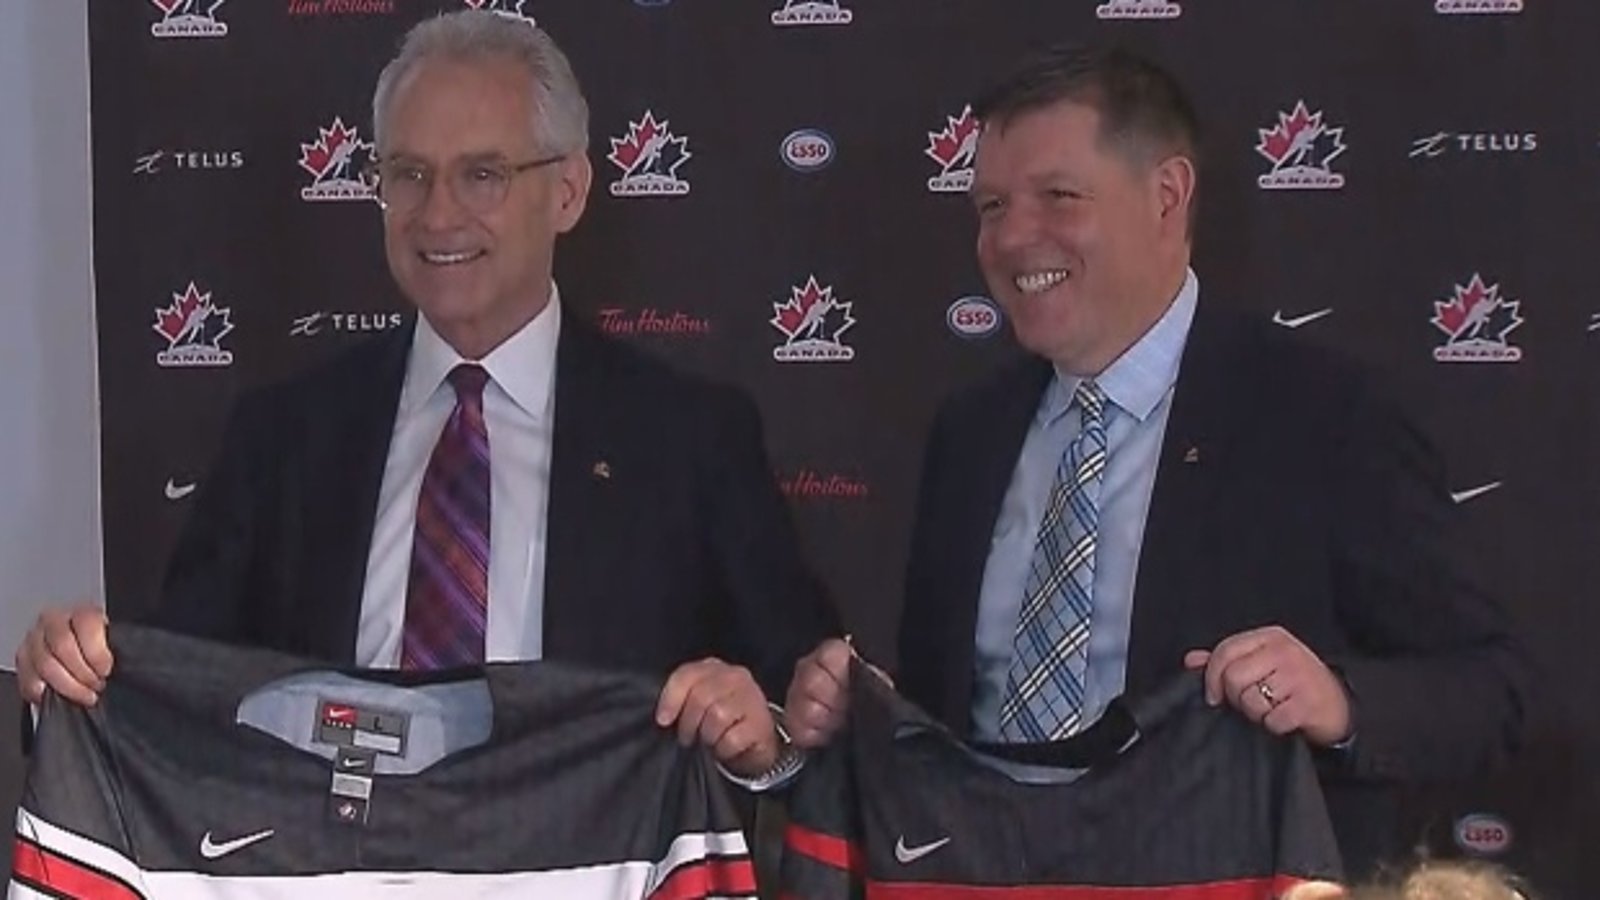 La démission immédiate de tous les dirigeants de Hockey Canada est officiellement demandée